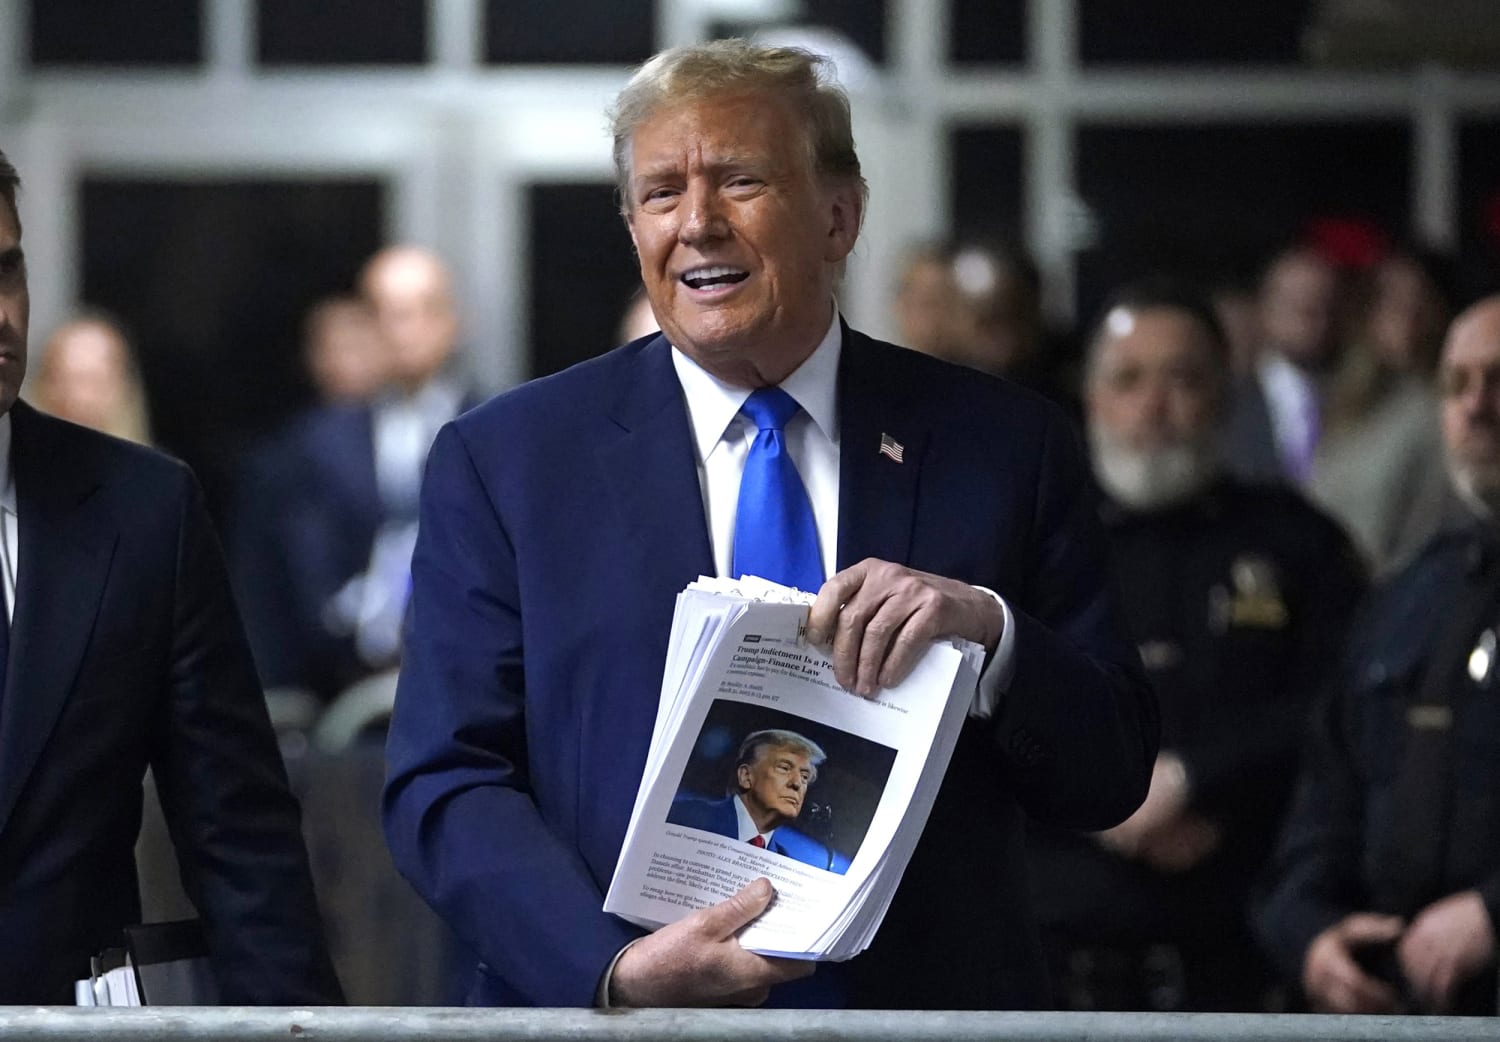 Trump's Surprise Endorsement Sends Shockwaves Among Allies